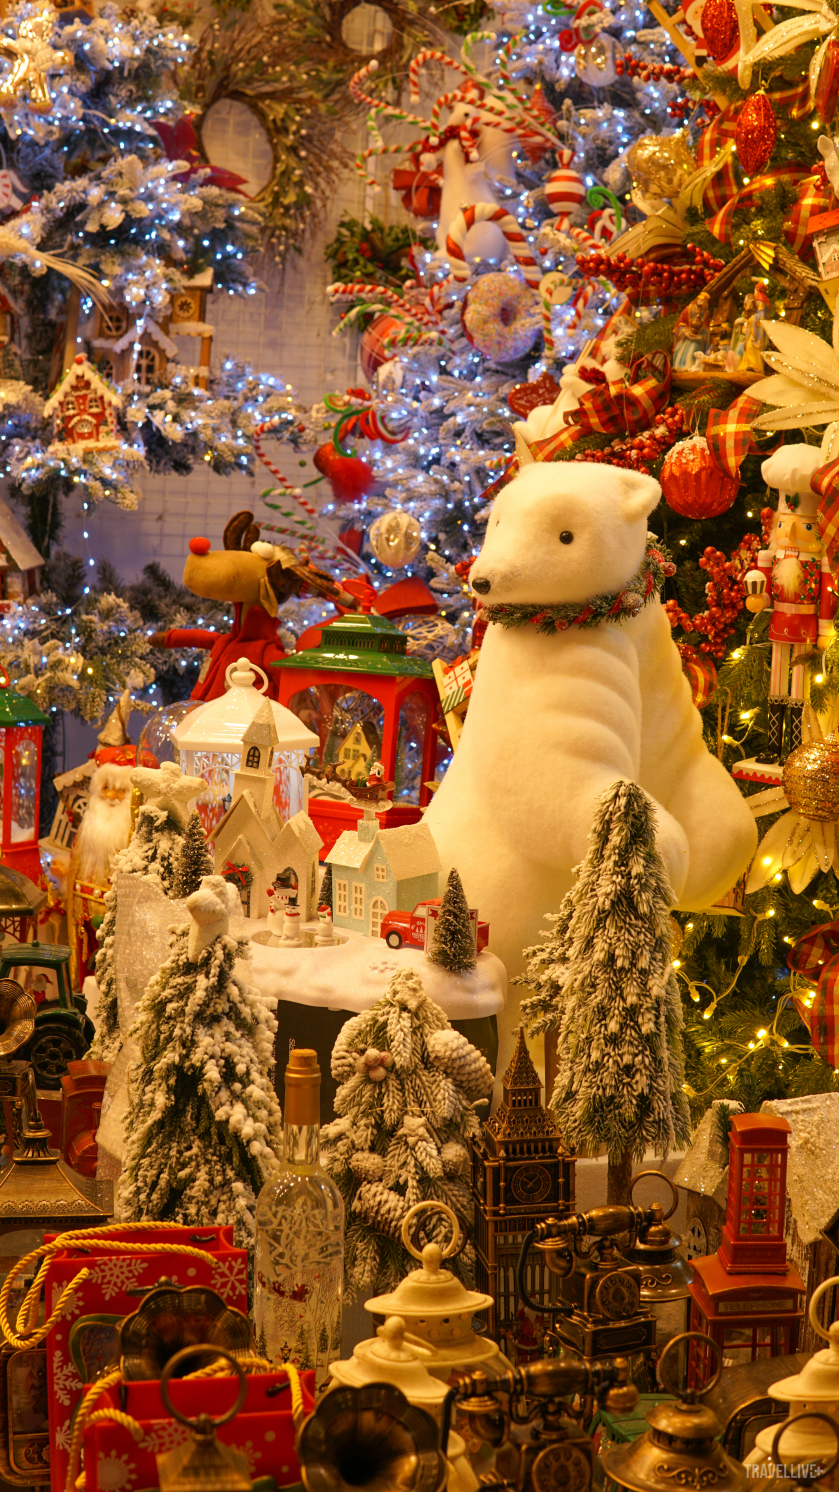 Gam màu chủ đạo của Giáng sinh như: đỏ, xanh, trắng, vàng của những món đồ trang trí Noel đểu được bày bán bắt mắt tại các cửa hàng